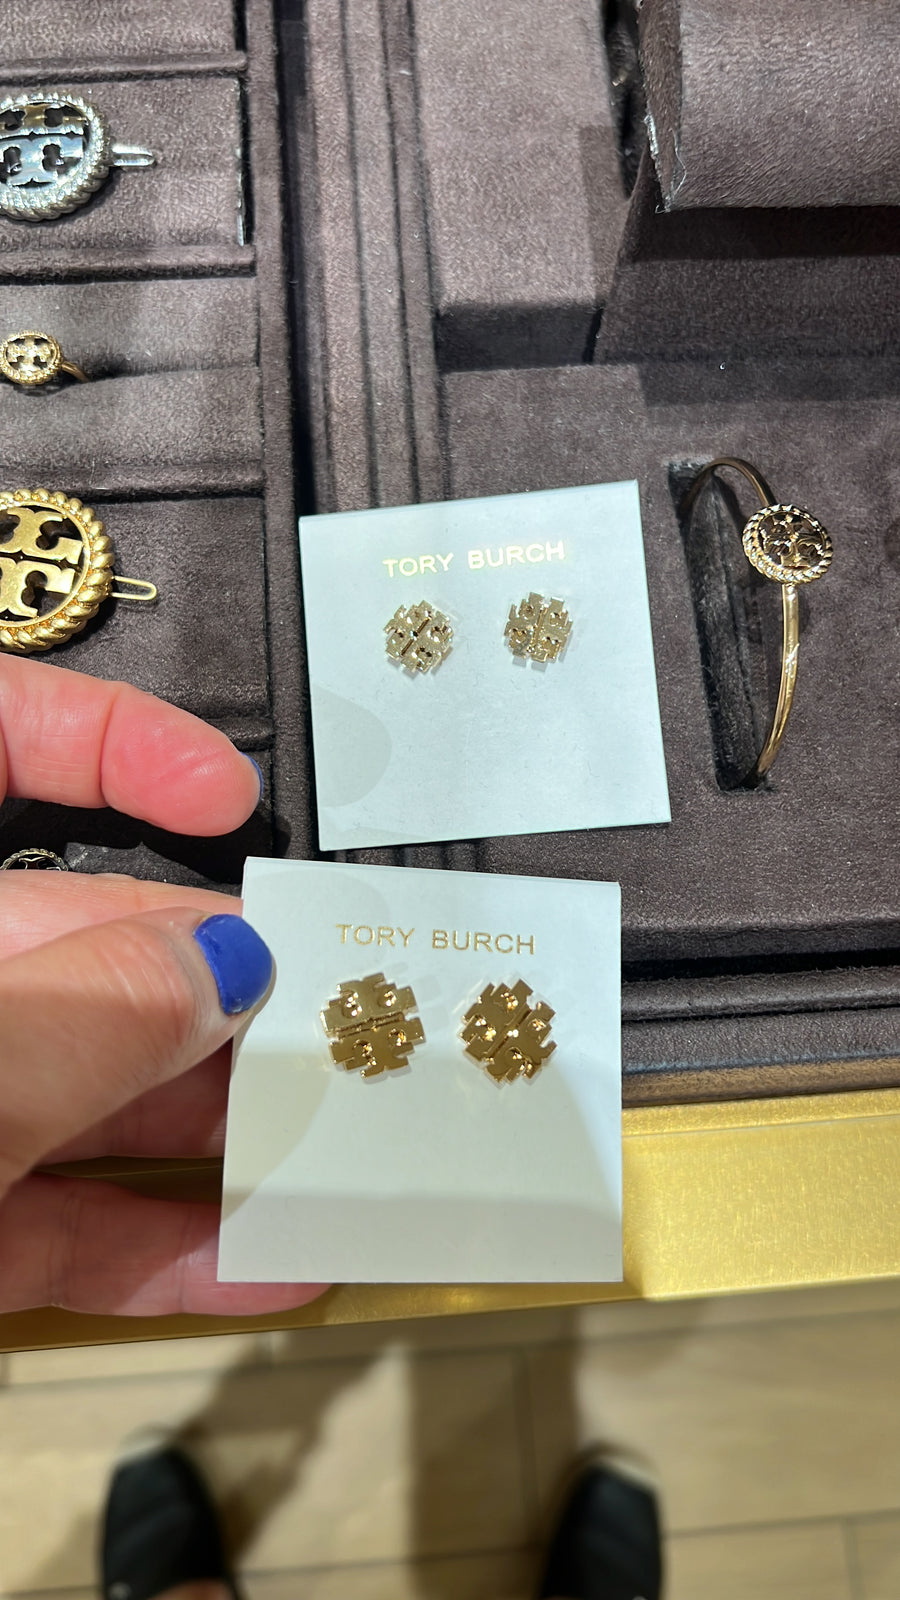 Tory Burch earrings